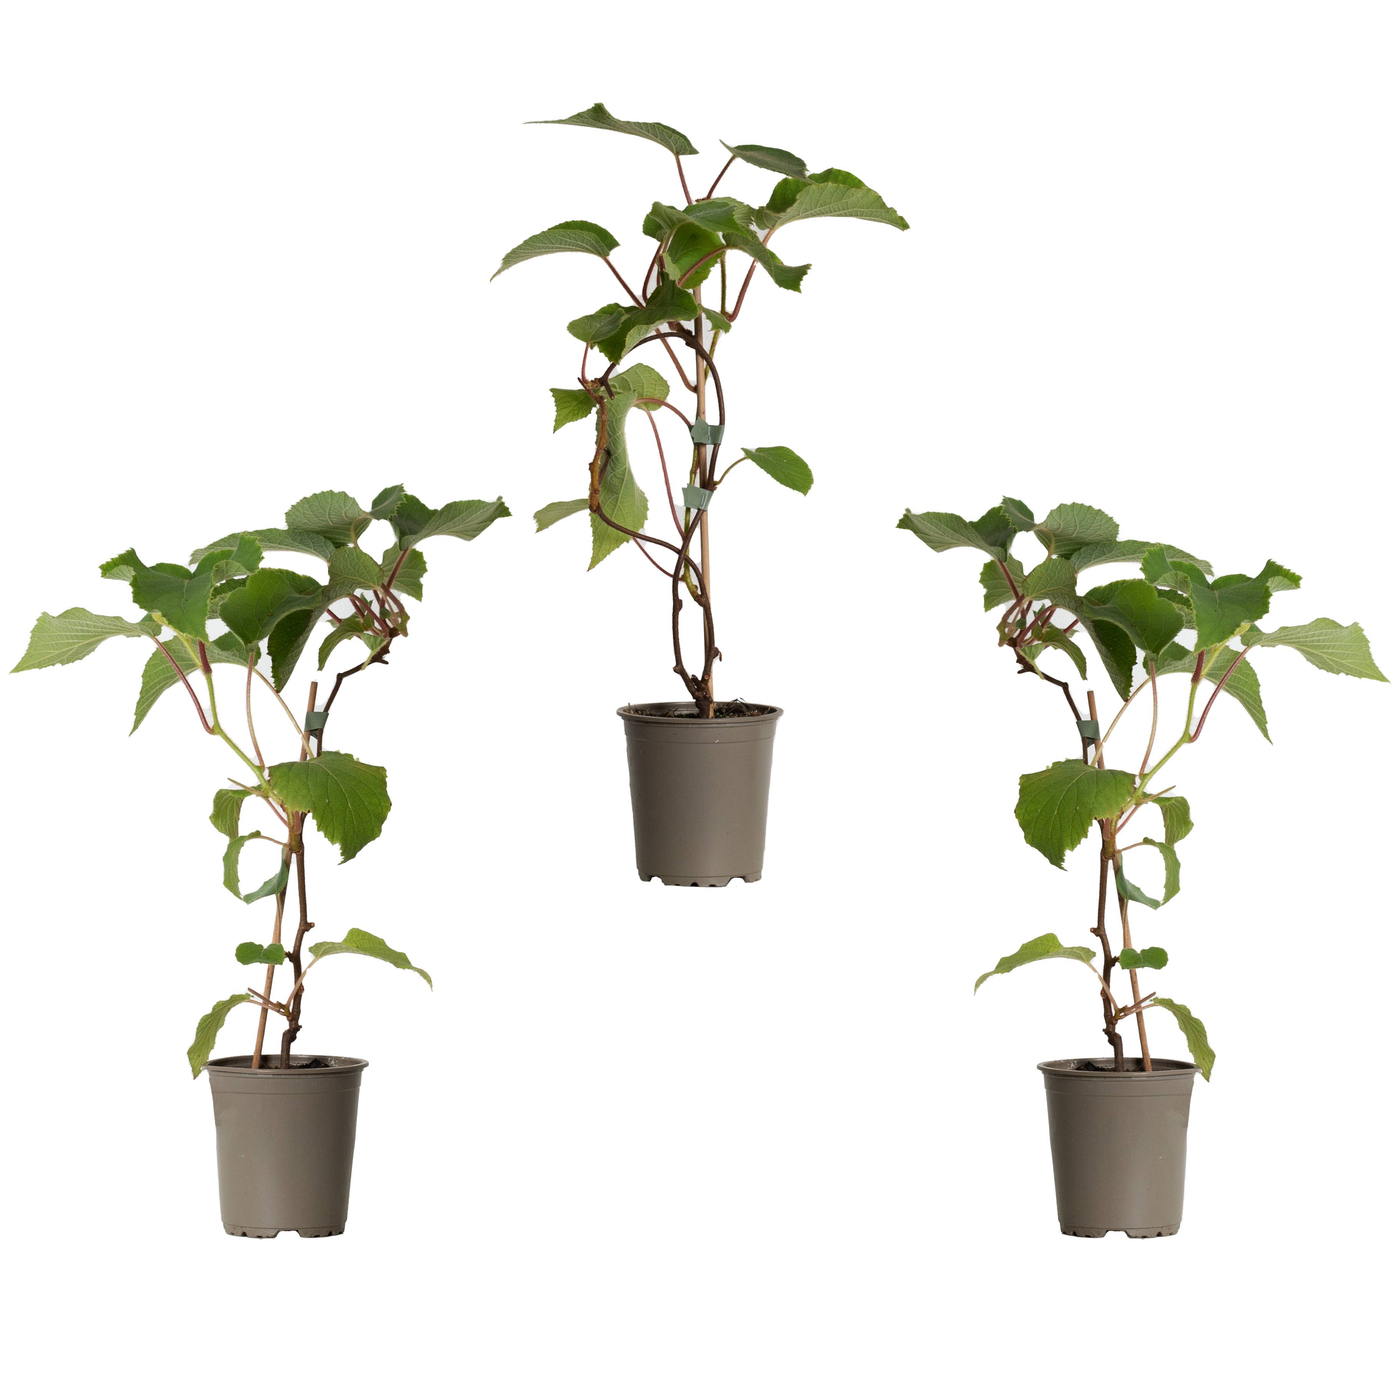 Kiari die Kiwi- 3 Pflanzen-Topfpflanzen-Botanicly